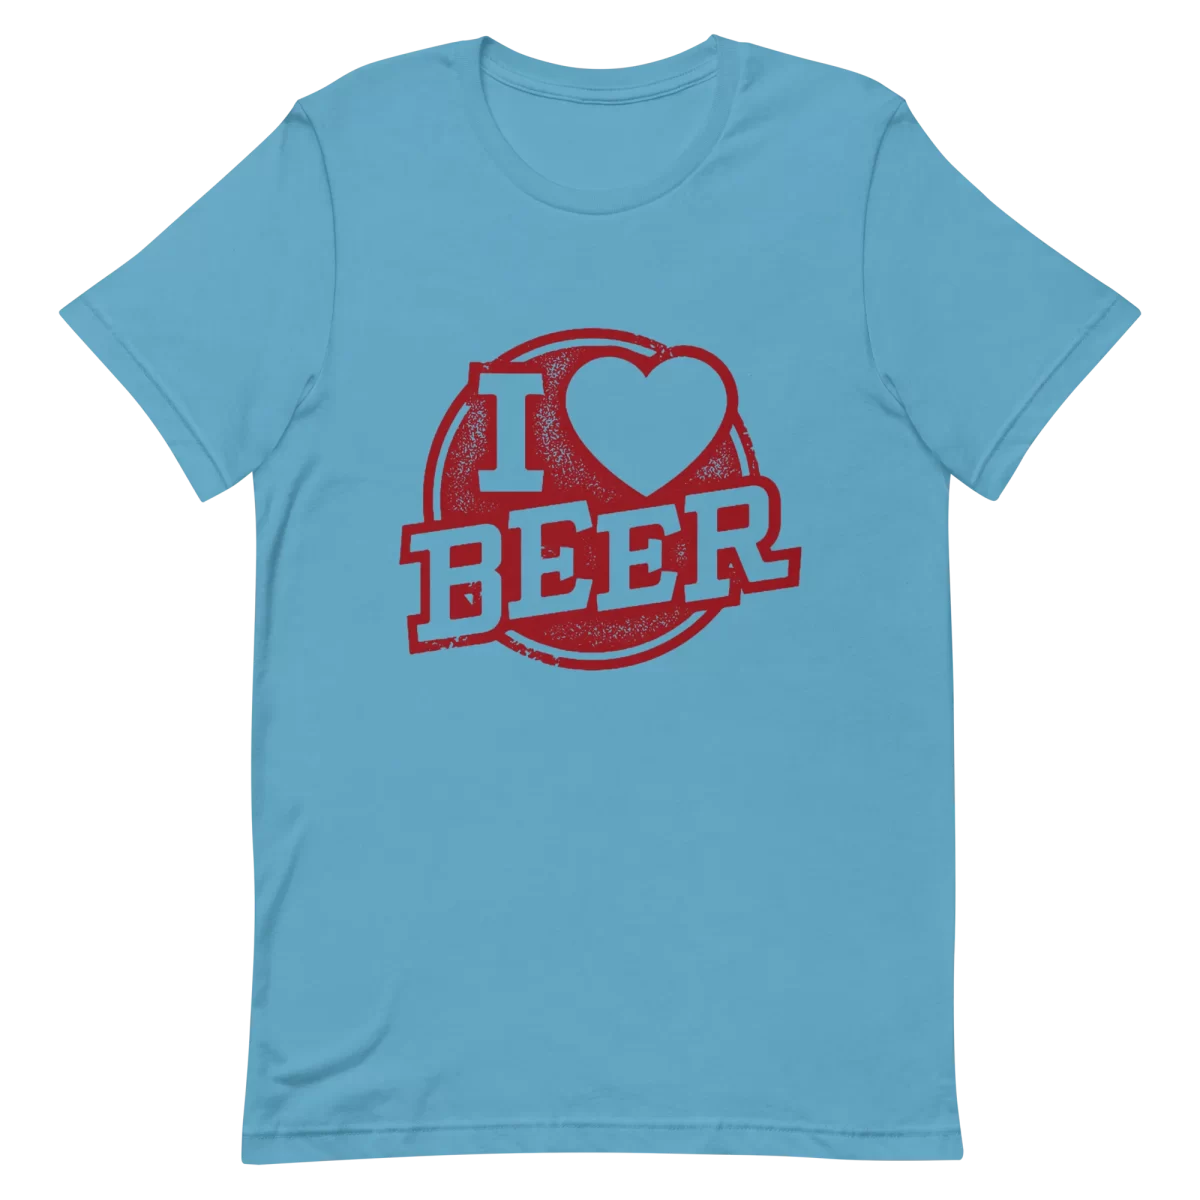 Unisex T-Shirt - I Love Beer - Ocean Blue